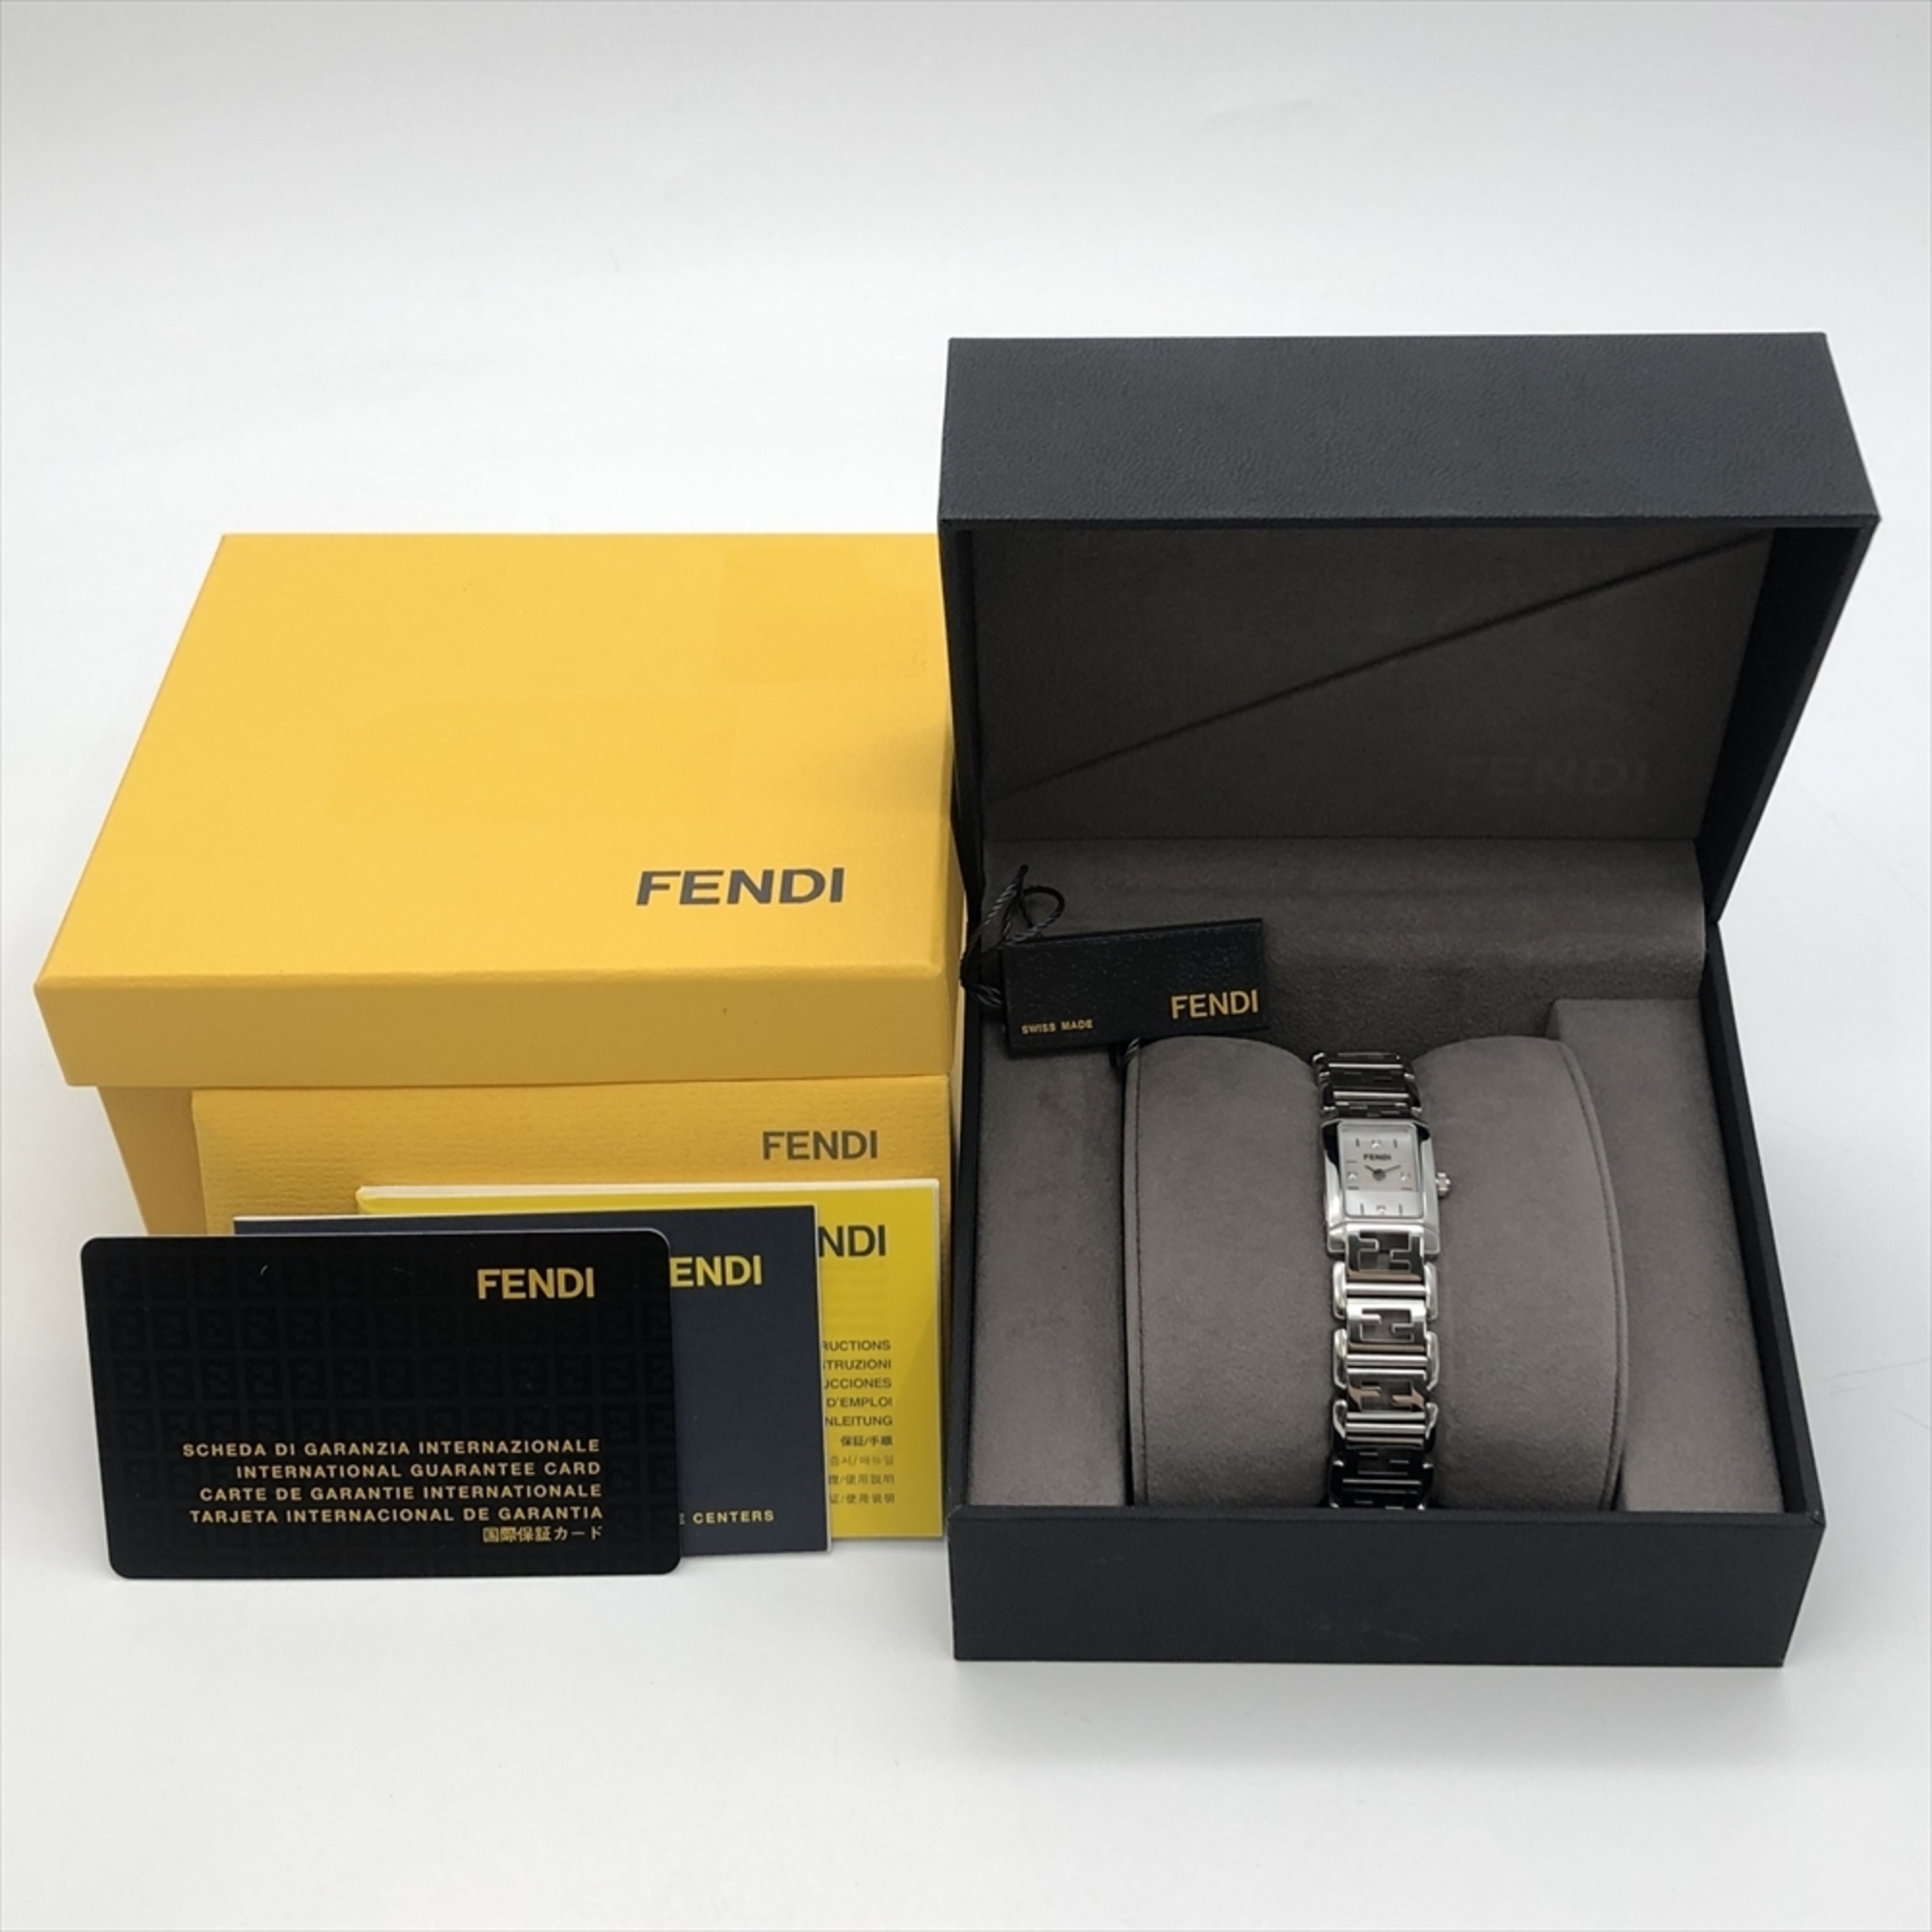 FENDI White Shell 1200L Wristwatch Quartz Dial Working